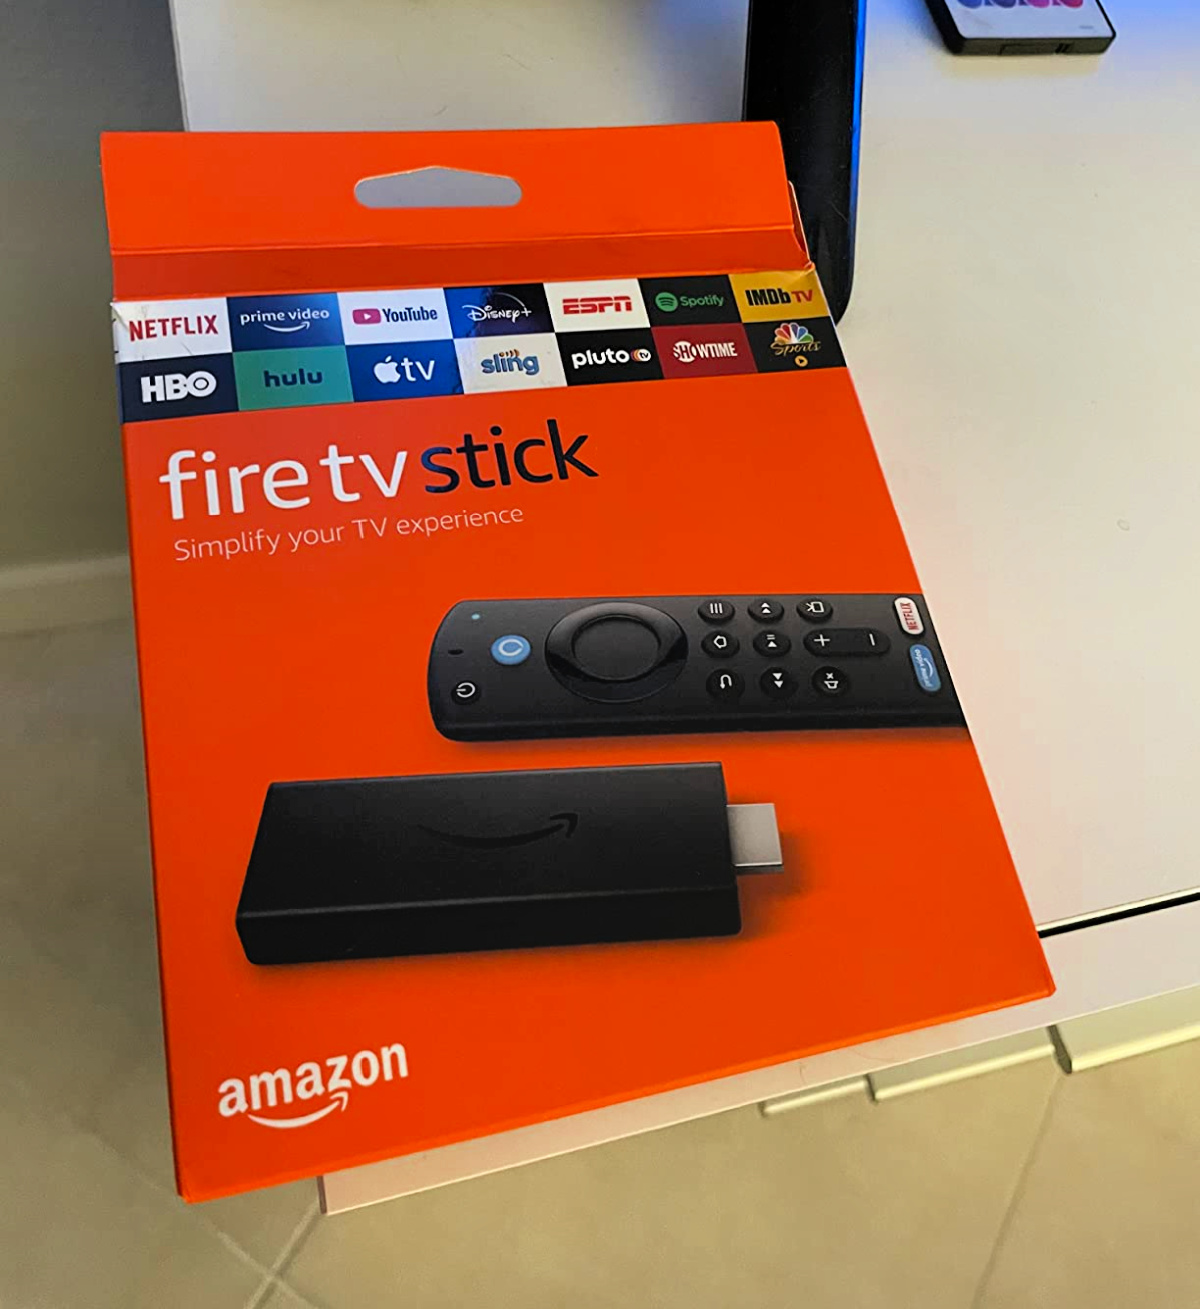 Roku vs Firestick: an Amazon Fire Stick box from an Amazon customer